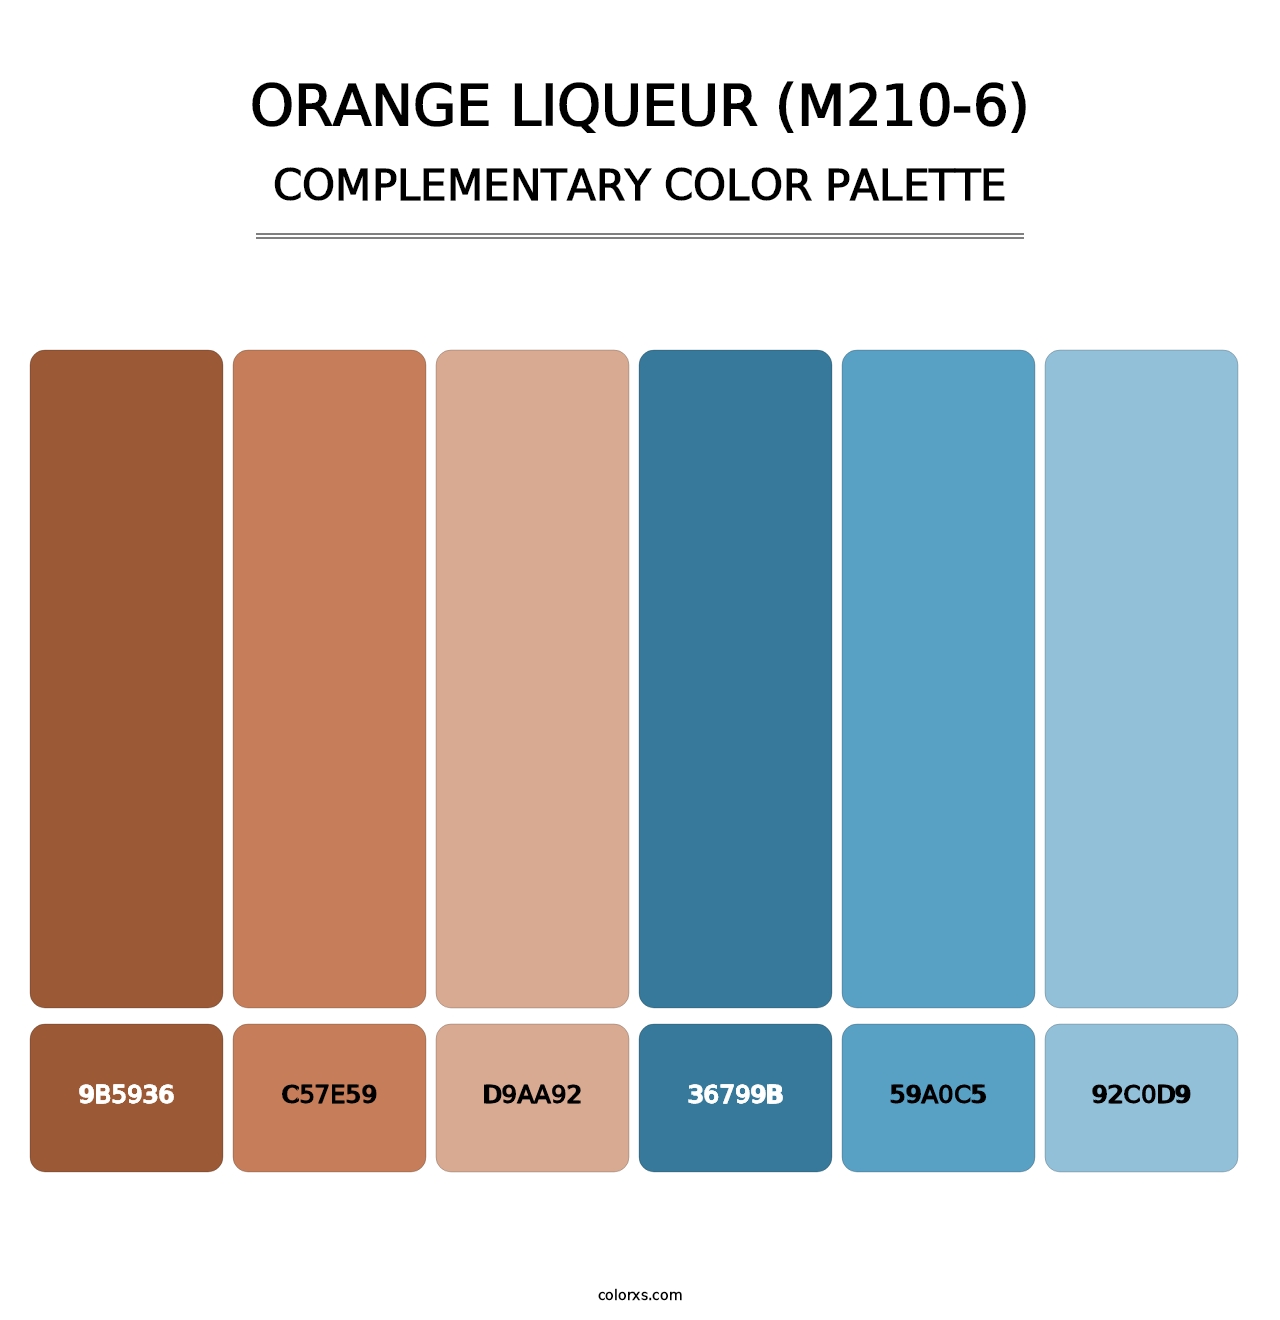 Orange Liqueur (M210-6) - Complementary Color Palette